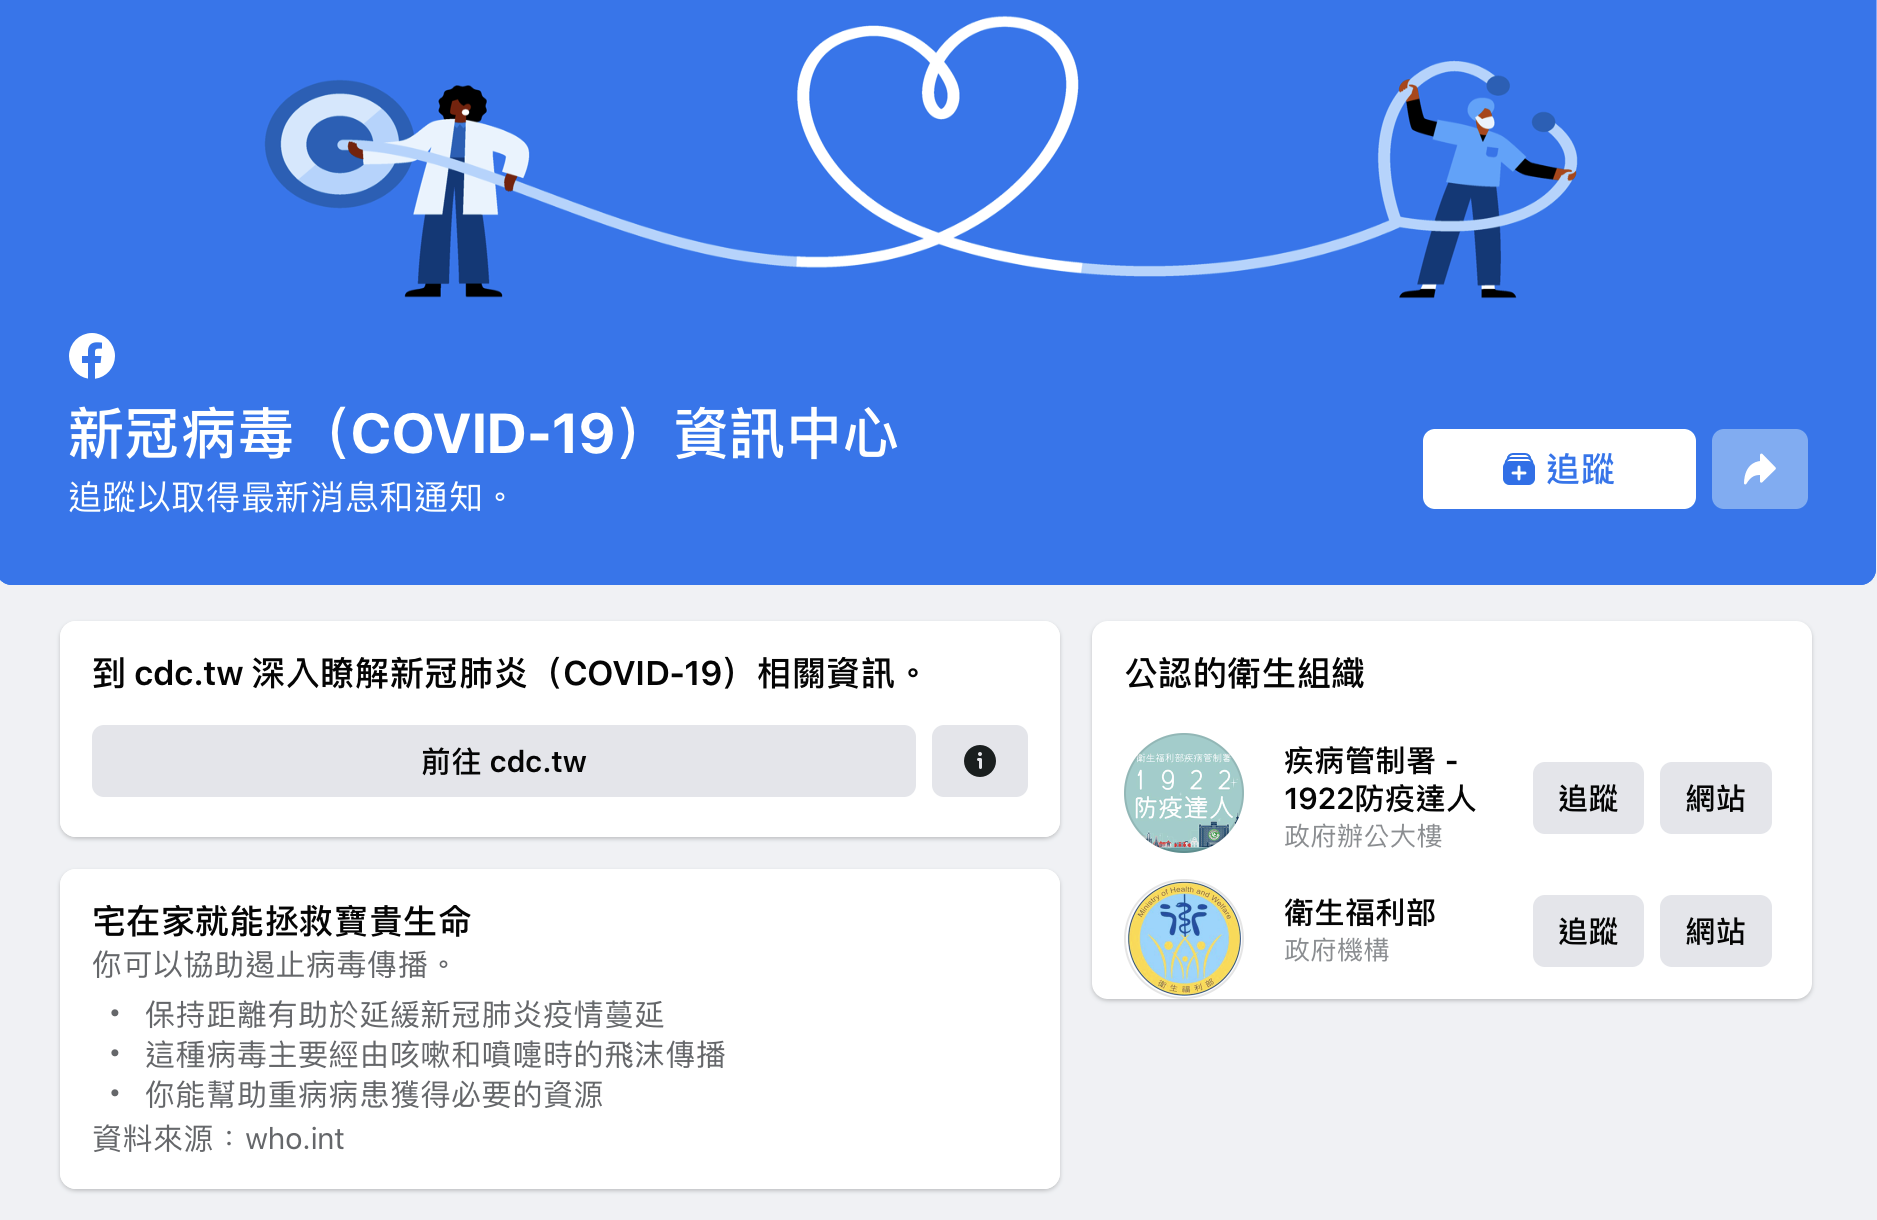 COVID19 info center